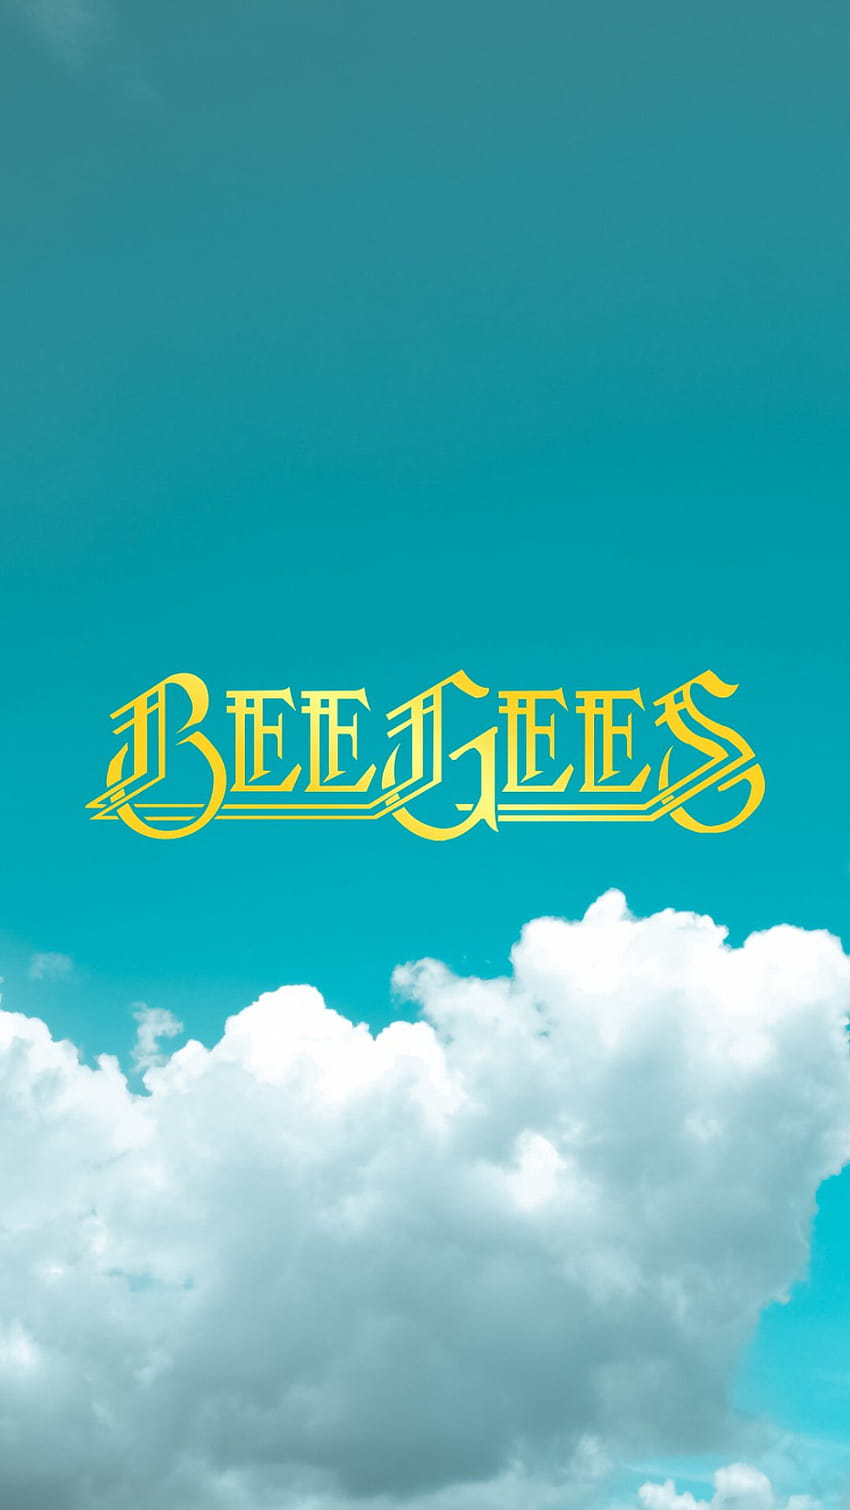 Bee Gees di Twitter pada tahun 2020, logo bee gees wallpaper ponsel HD